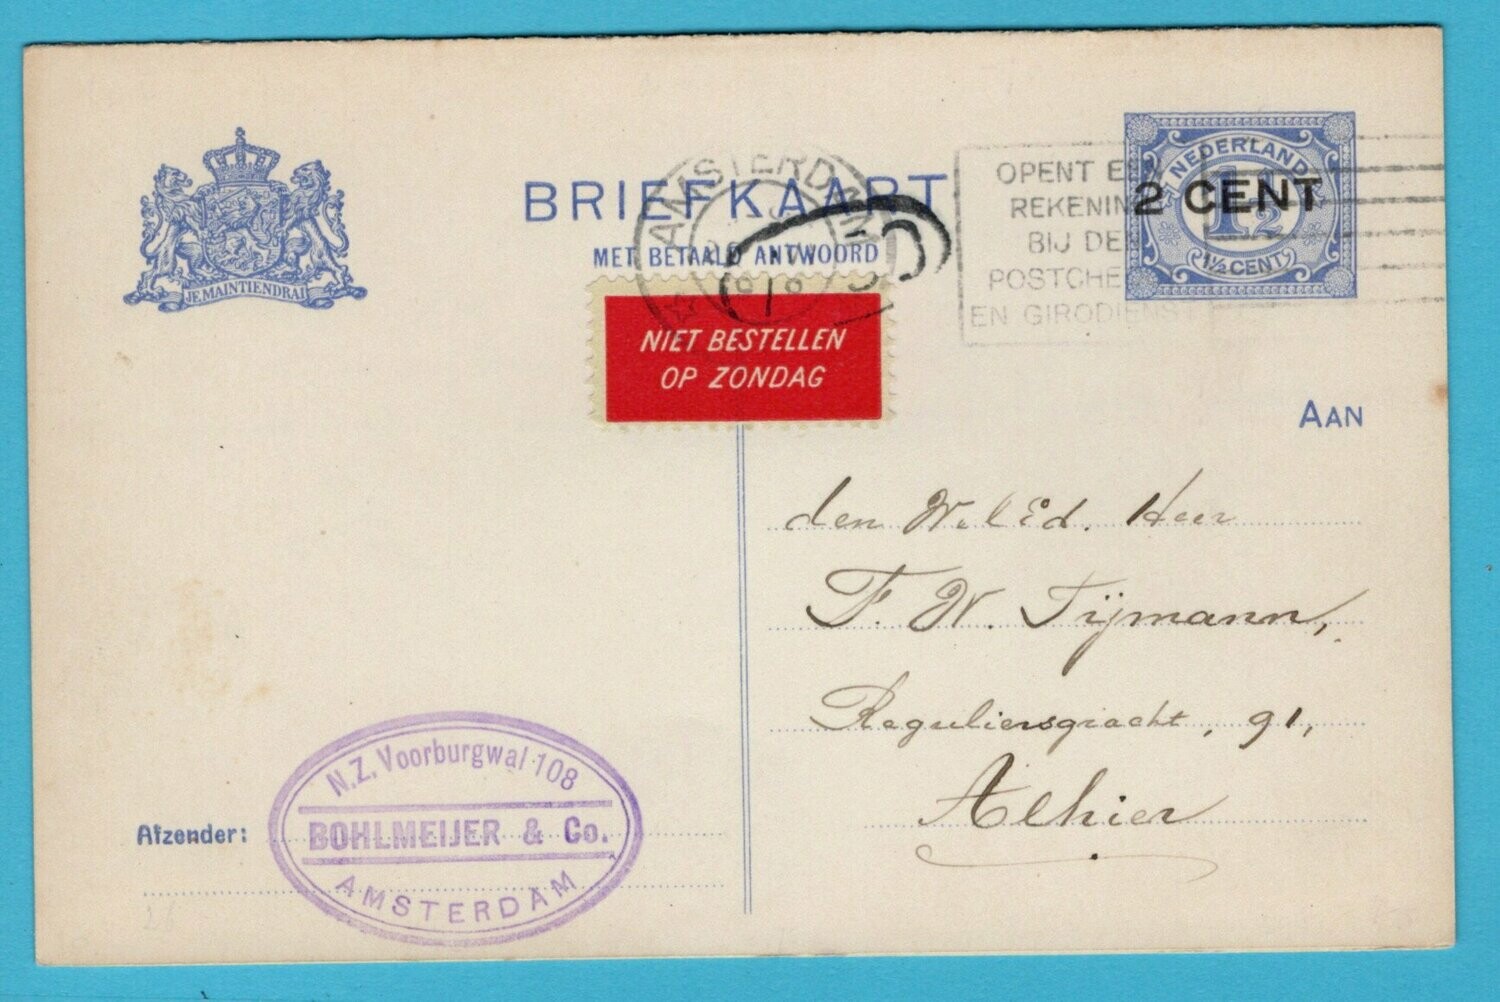 NEDERLAND briefkaart met antwoord 1919 Amsterdam lokaal